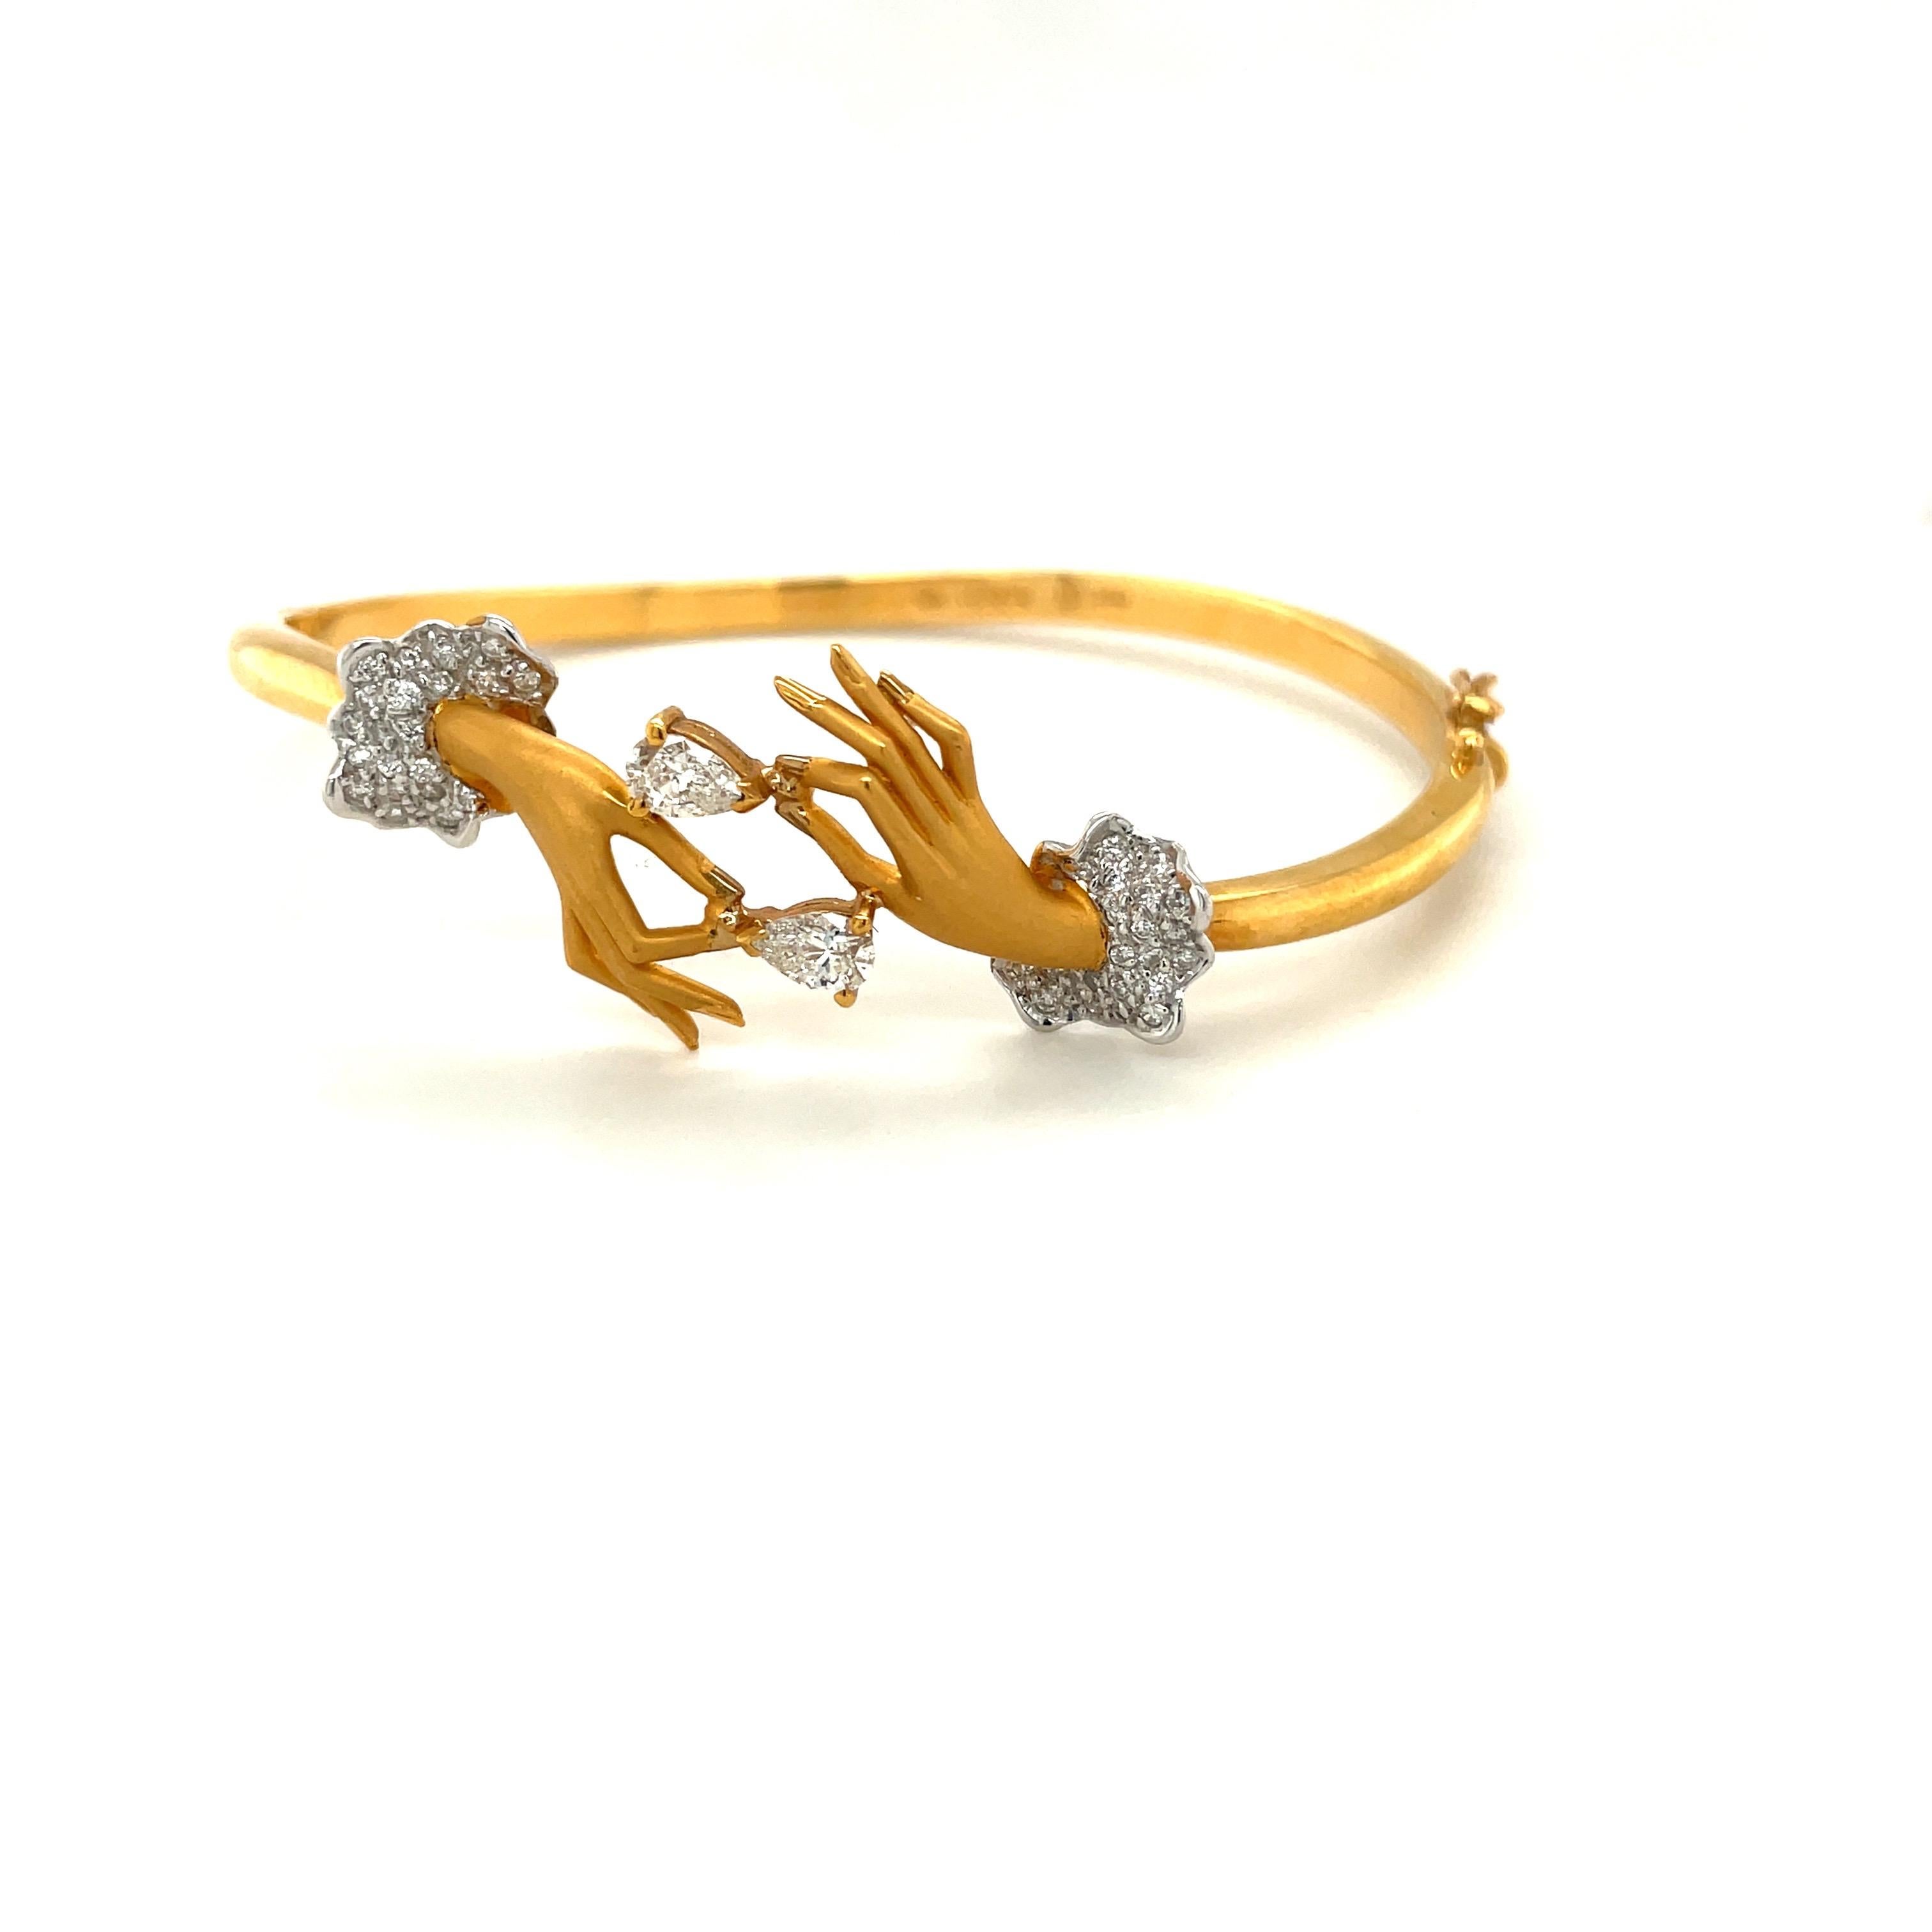 Carrera Y Carrera hat seinen berühmten Namen mit figurativen Designs, einer Besessenheit für Oberflächen und einer überzeugenden Art, die Schönheit in Kunst und Natur zu sehen, begründet.
Dieses Armband aus 18 Karat Gelbgold ist ein perfektes